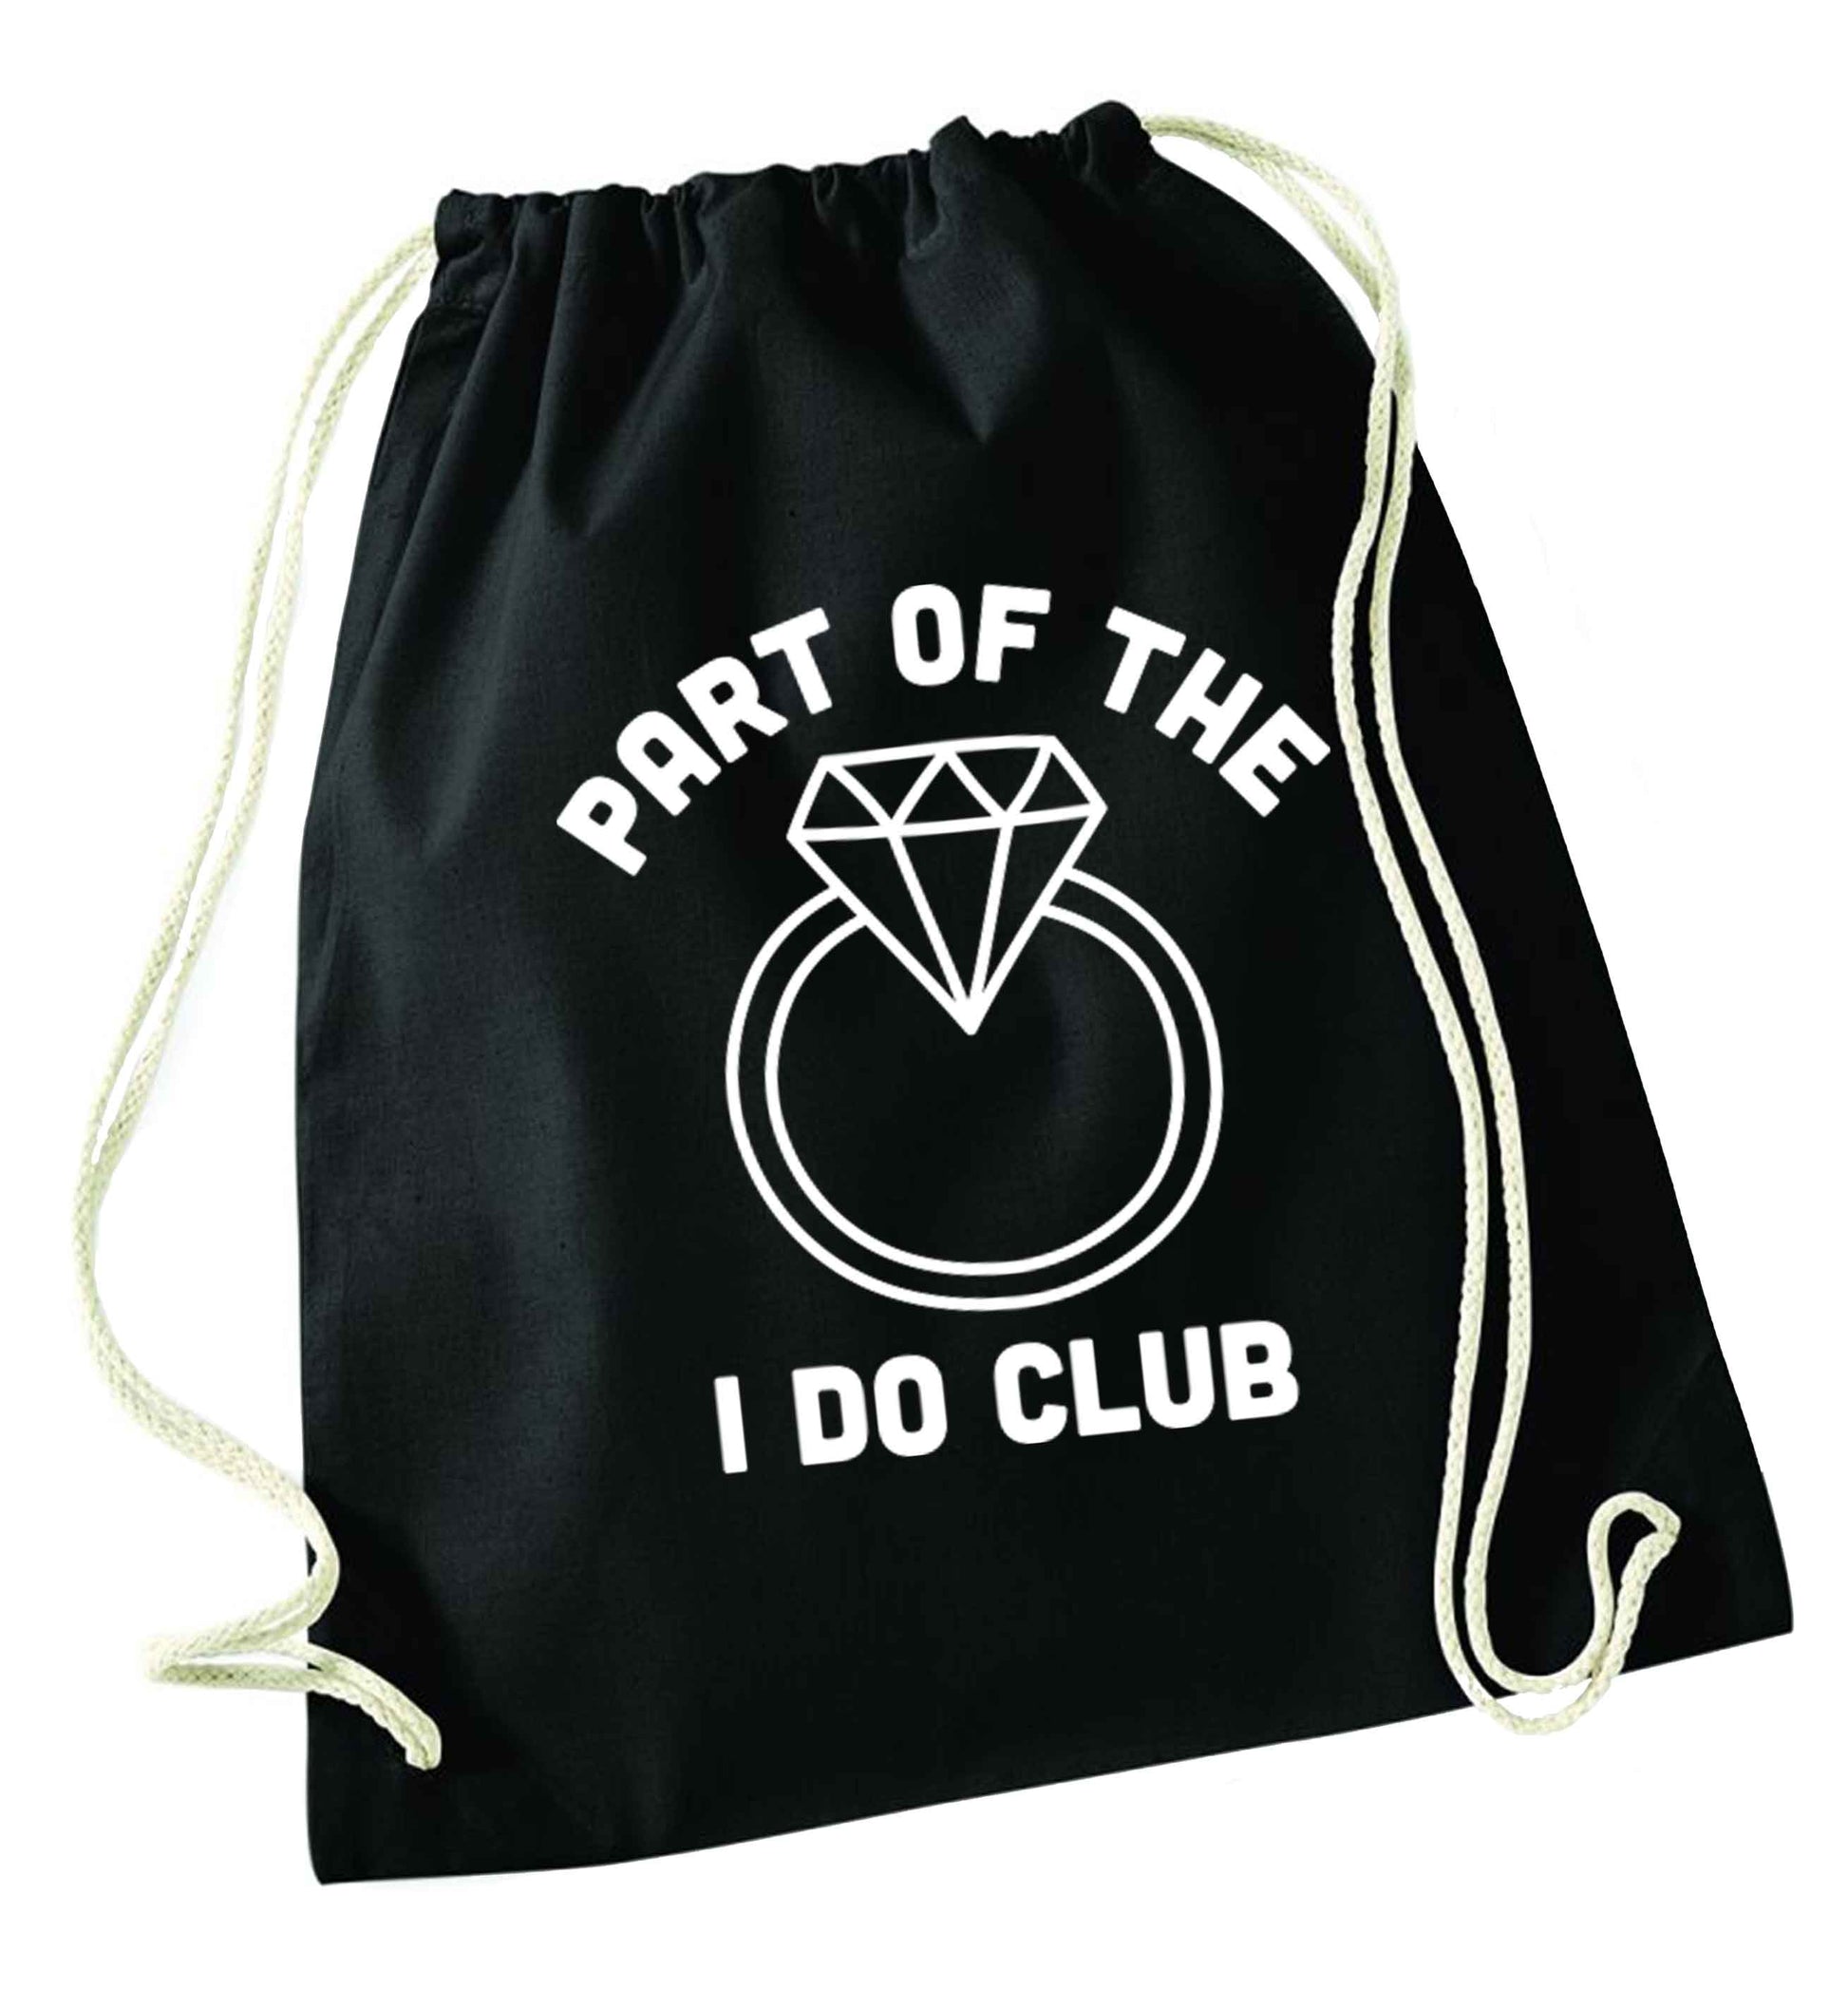 Part of the I do club black drawstring bag